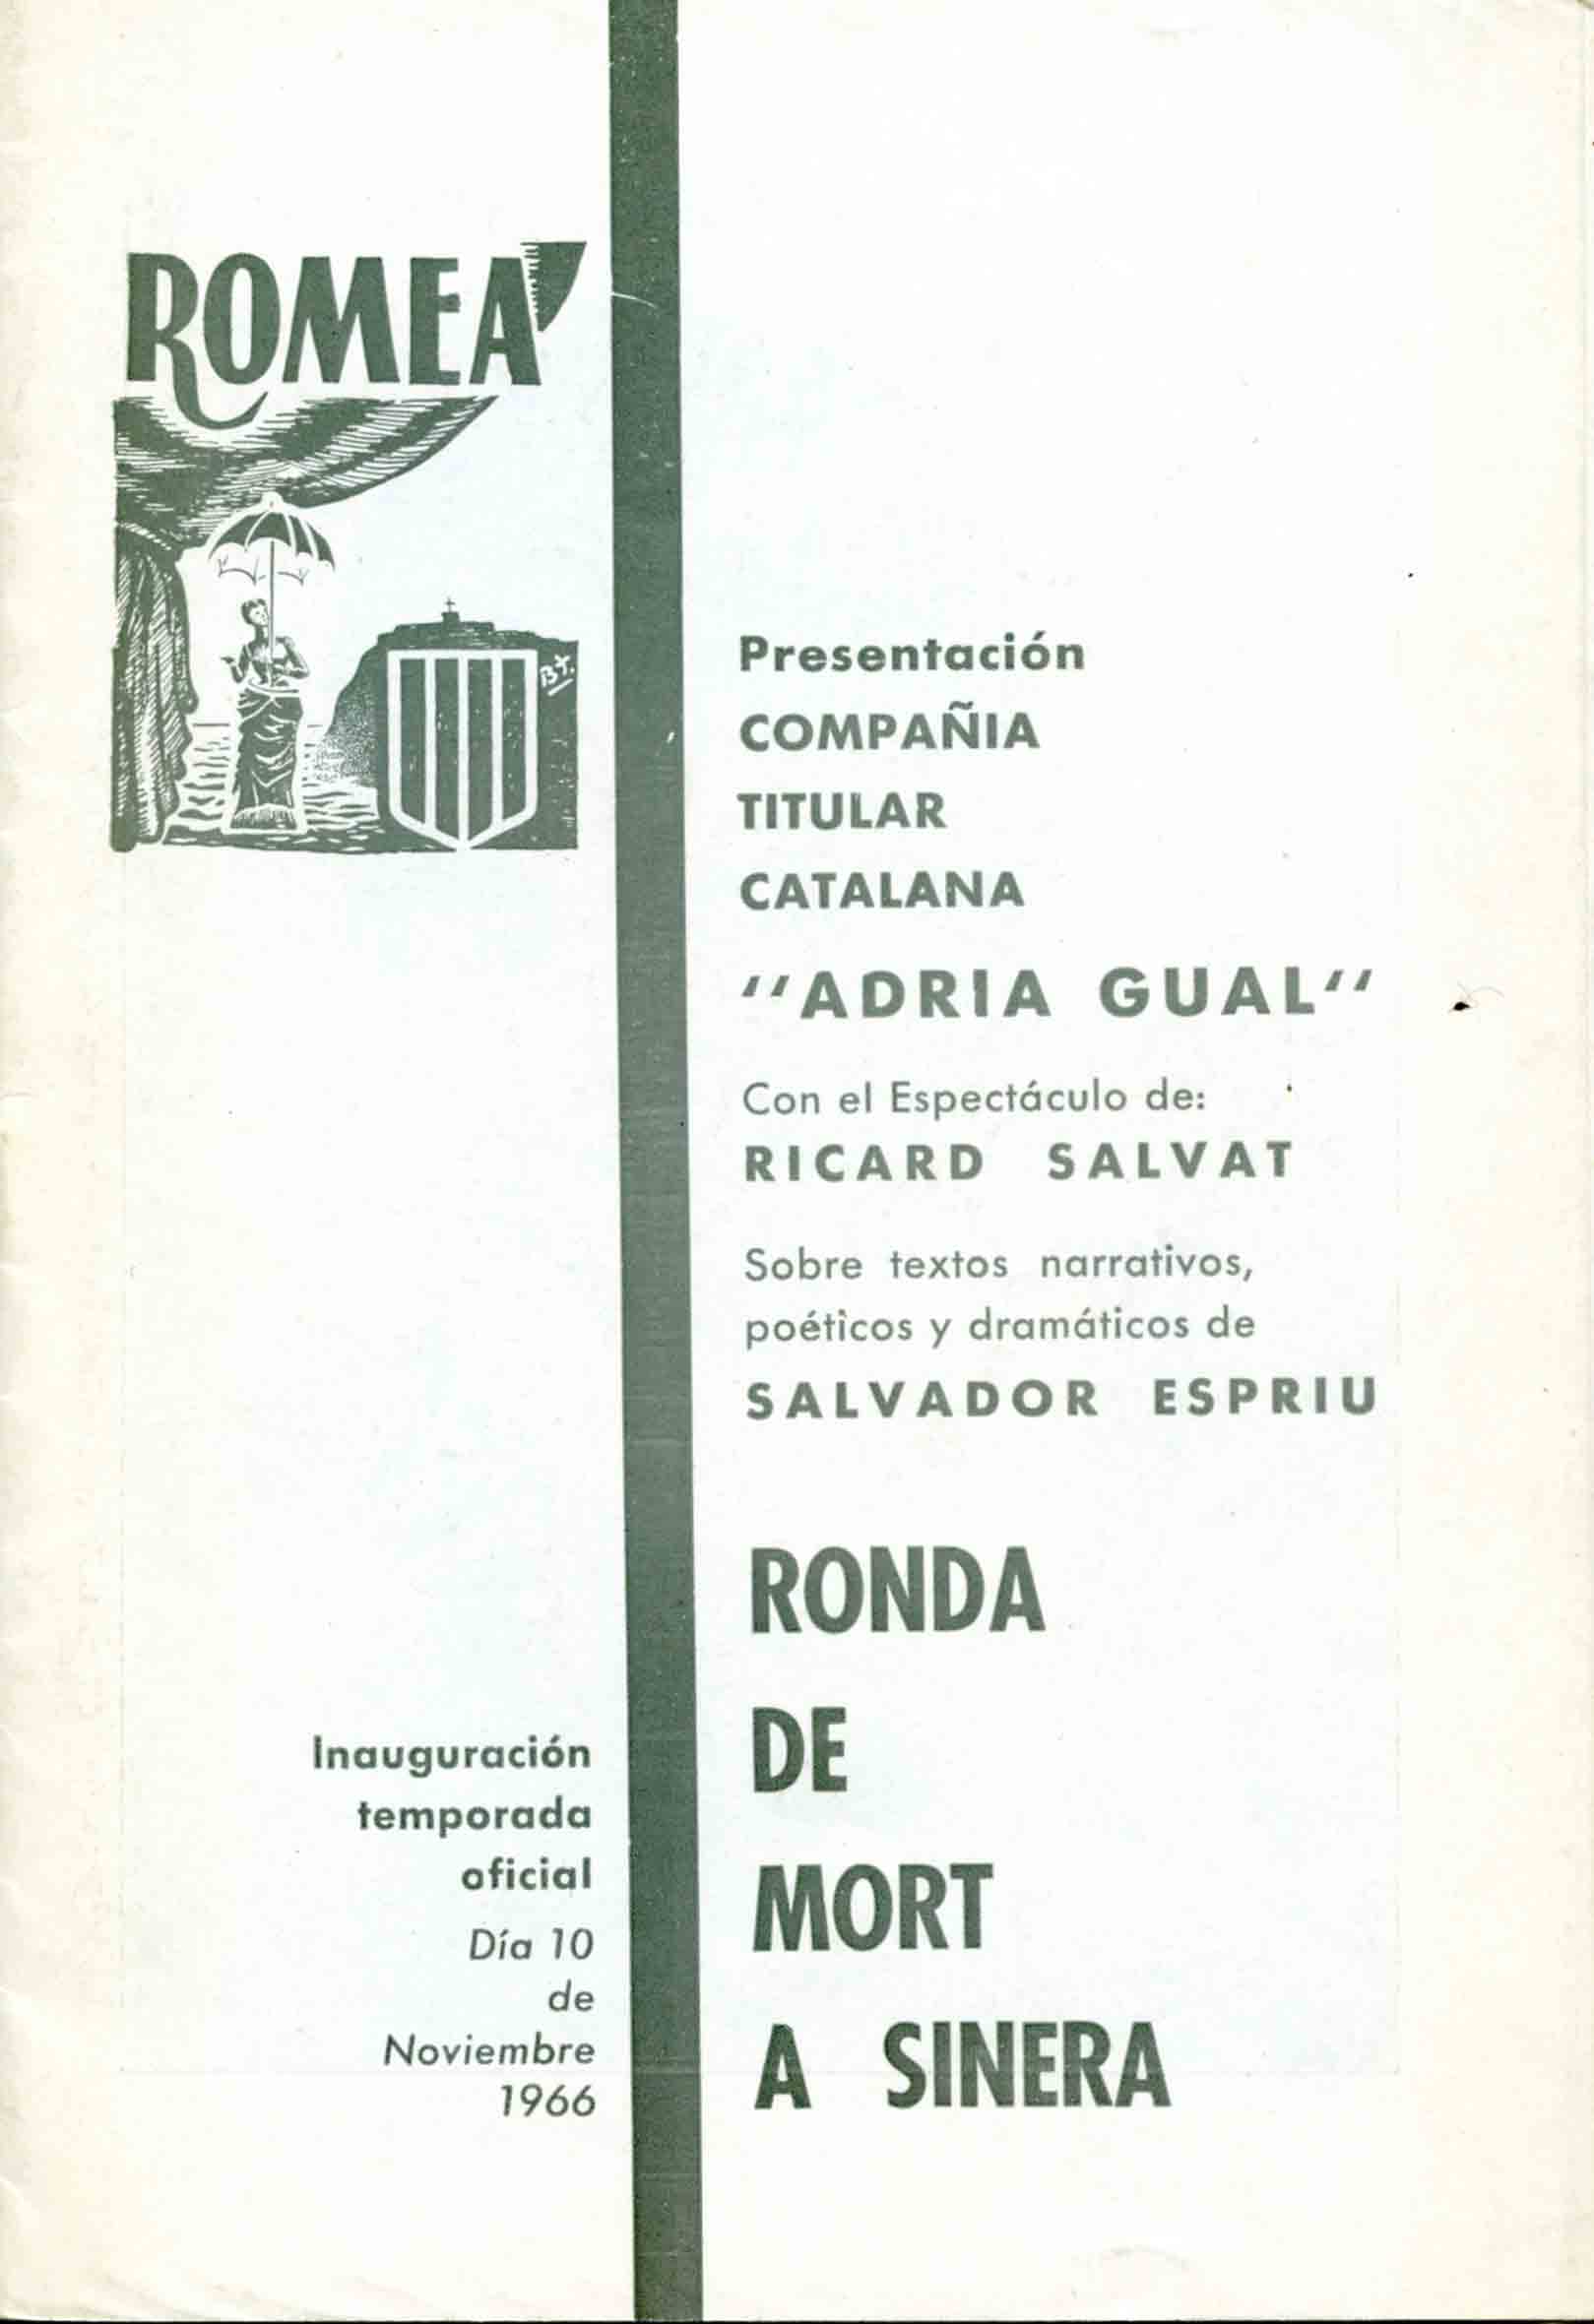 Programa. Ronda de mort a Sinera. Companyia Adrià Gual. Teatre Romea, 1966